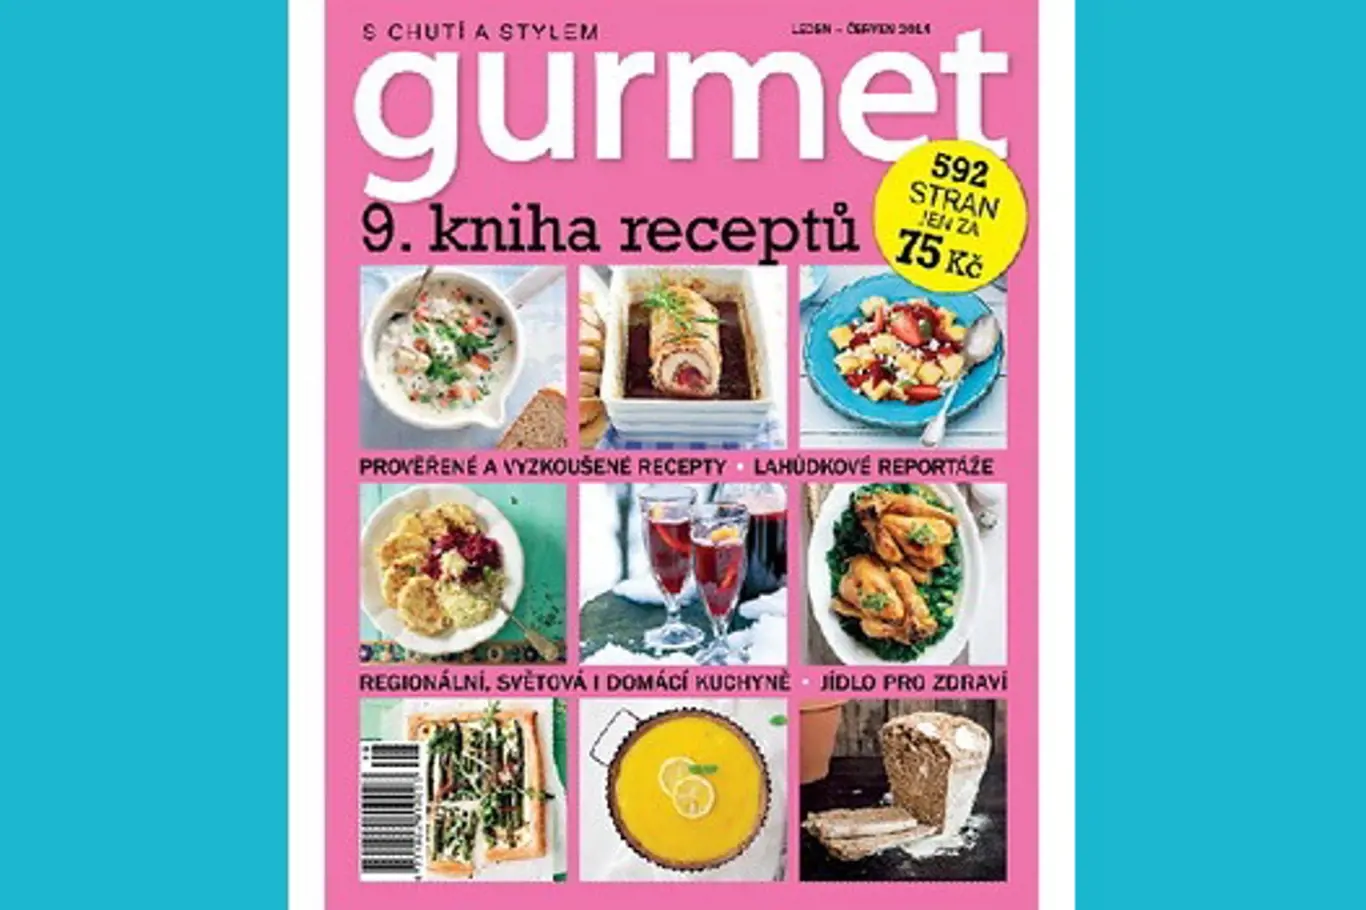 Vychází senzační kniha časopisu Gurmet